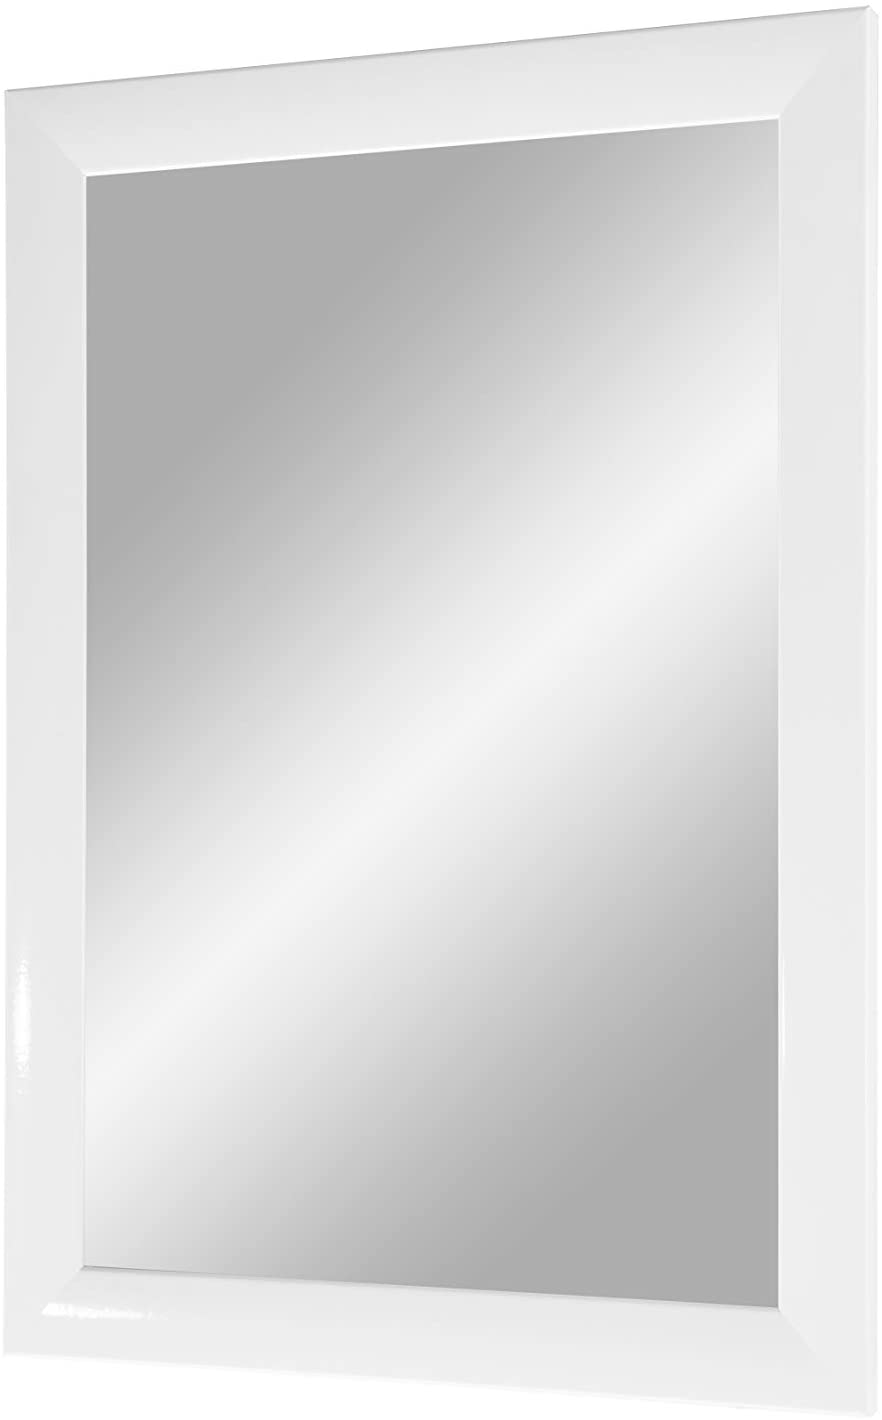 EXCLUSIV Wandspiegel nach Maß (Weiß-Hochglanz), Maßgefertigter Spiegelrahmen inkl. Spiegel und stabiler Rückwand mit Aufhängern